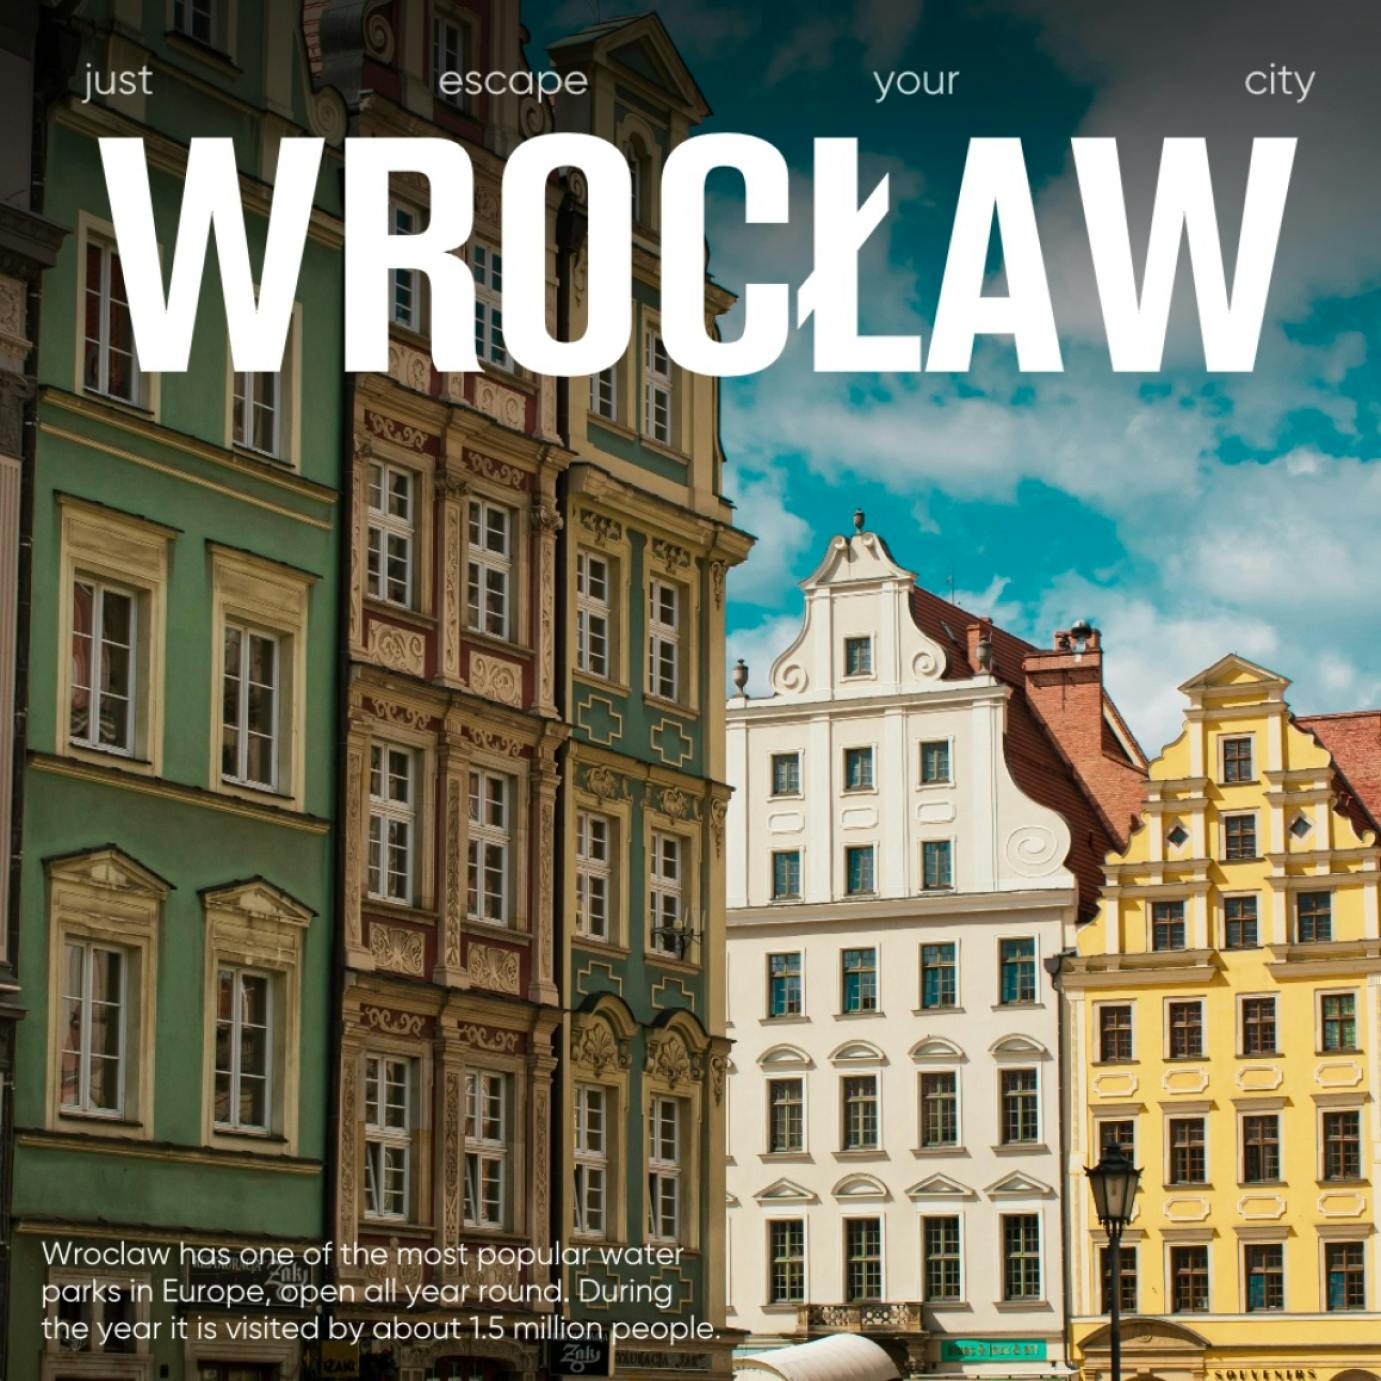 Caça ao tesouro pela cidade velha de Wroclaw com seu telefone